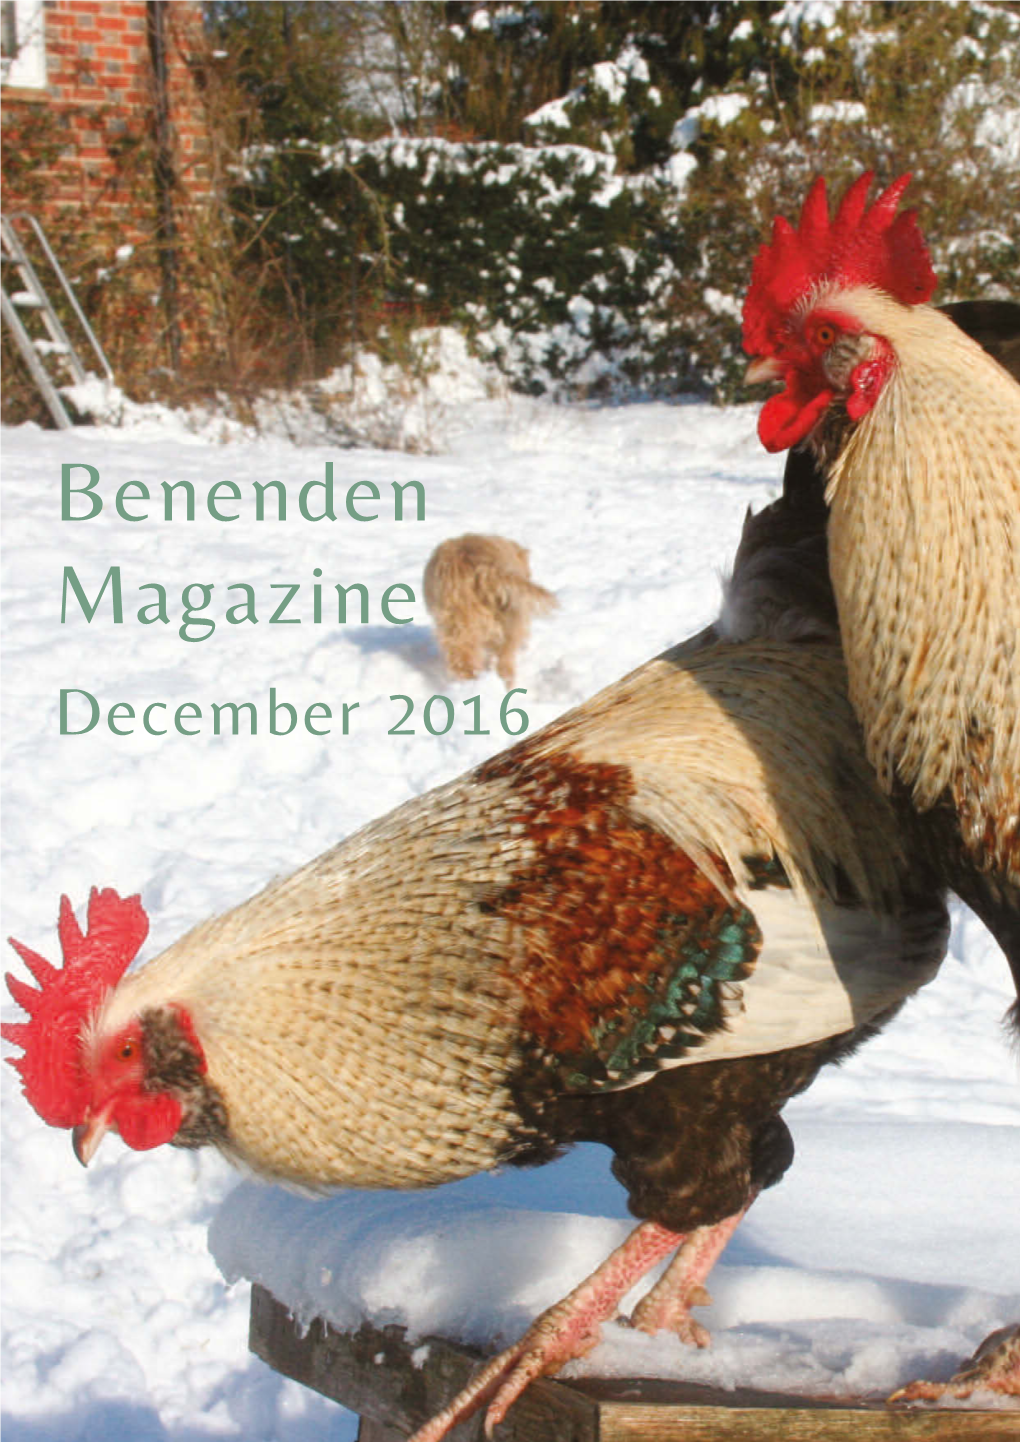 Benenden Magazine December 2016